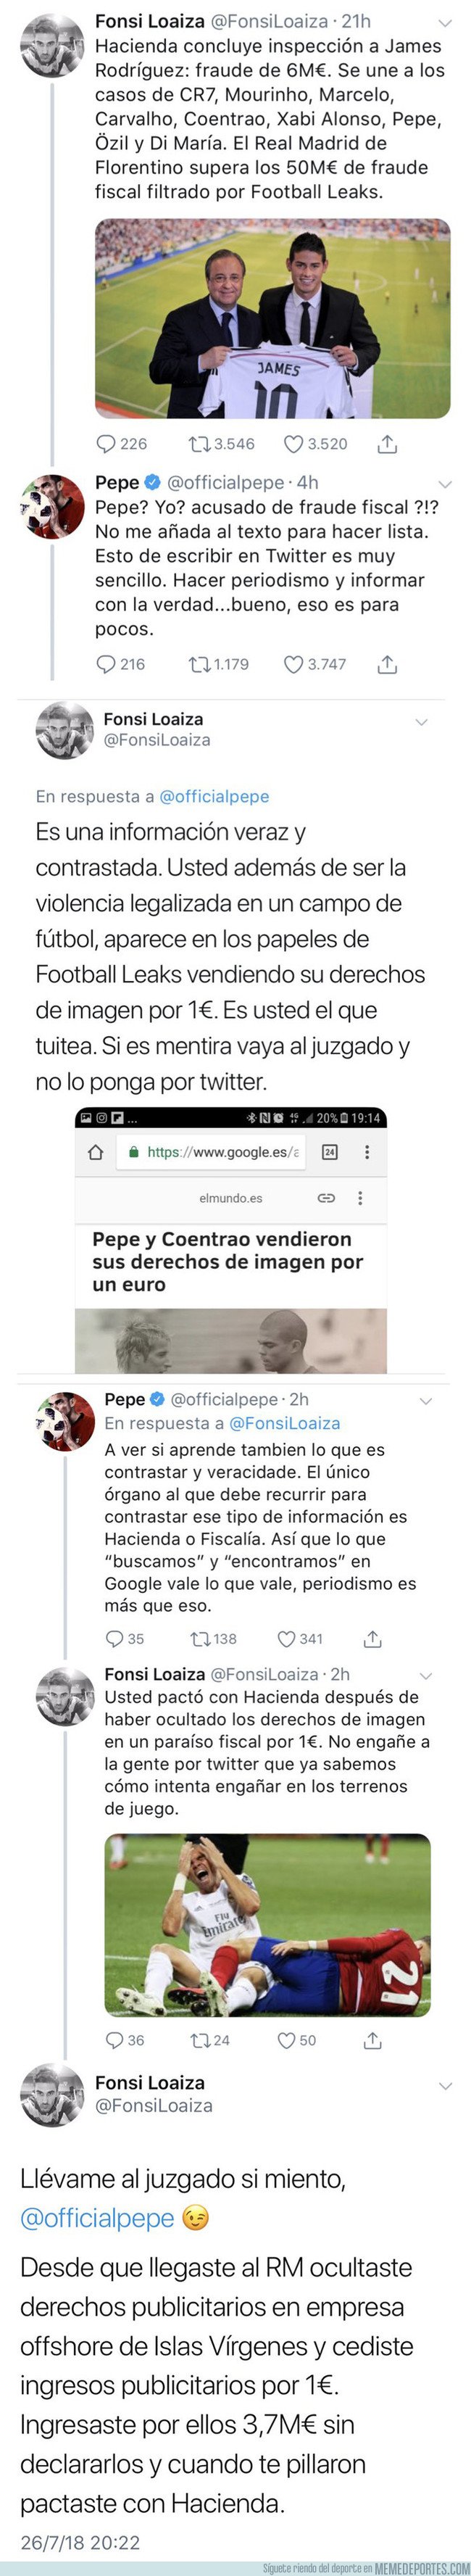 1046212 - Pepe se cabrea y contesta a un periodista que lo incluyó en la lista de madridistas acusados por fraude